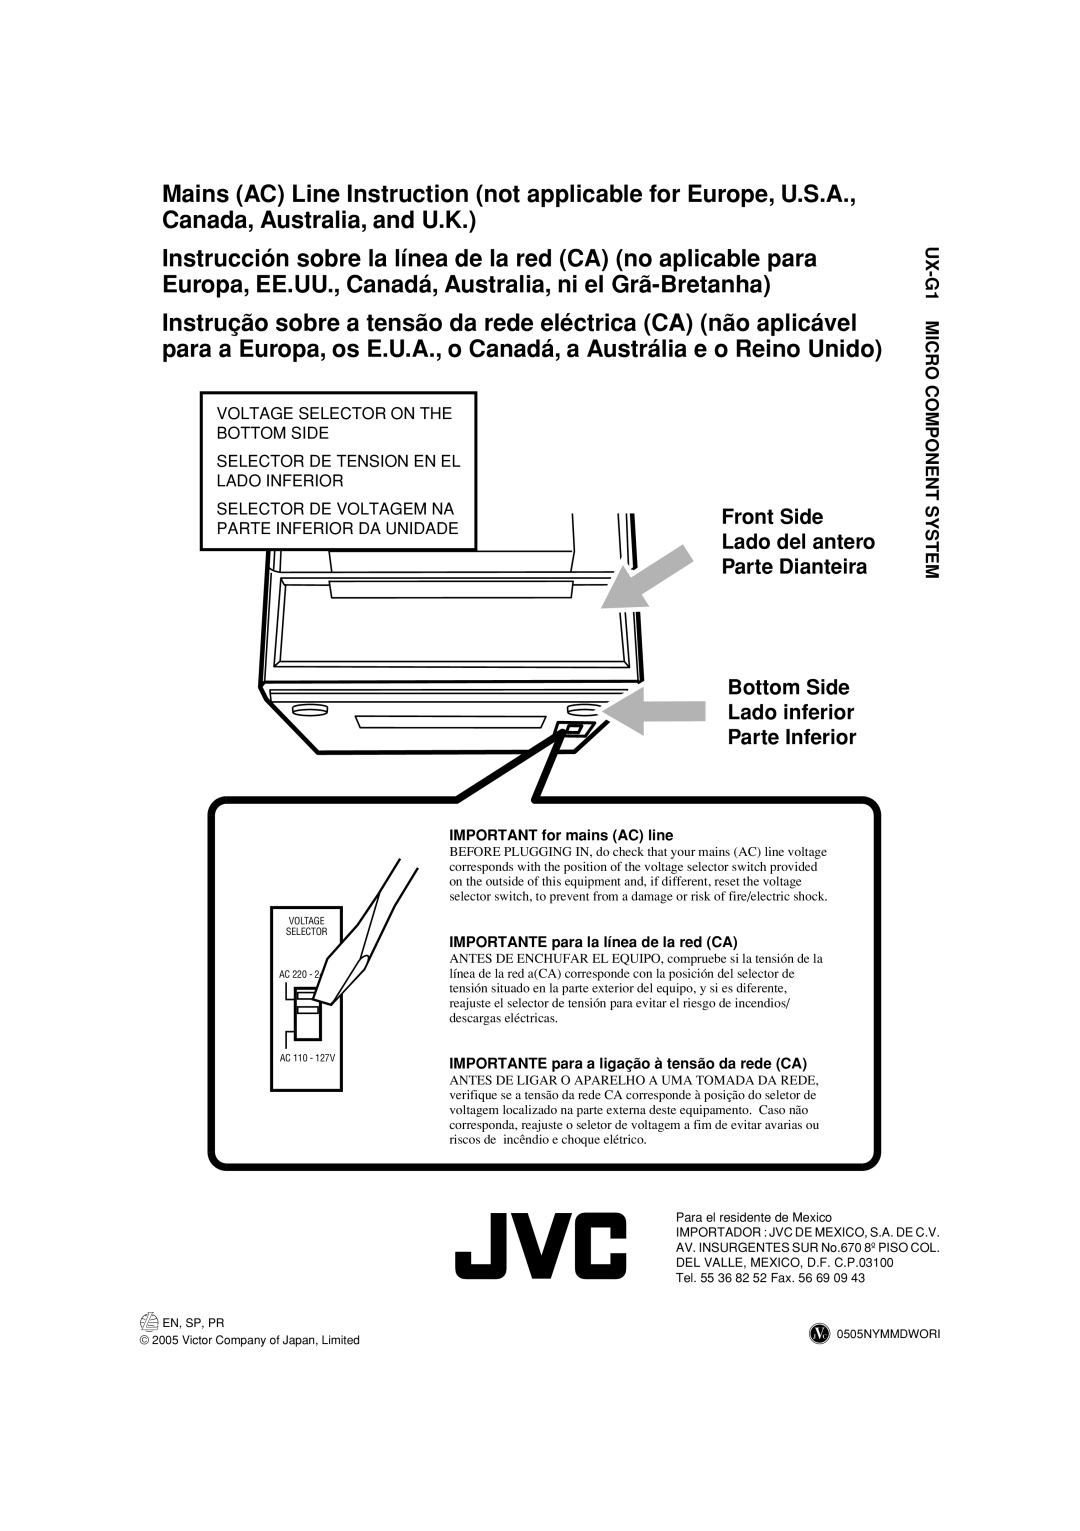 JVC LVT1356-005A manual Bottom Side Lado inferior Parte Inferior, Front Side Lado del antero Parte Dianteira 